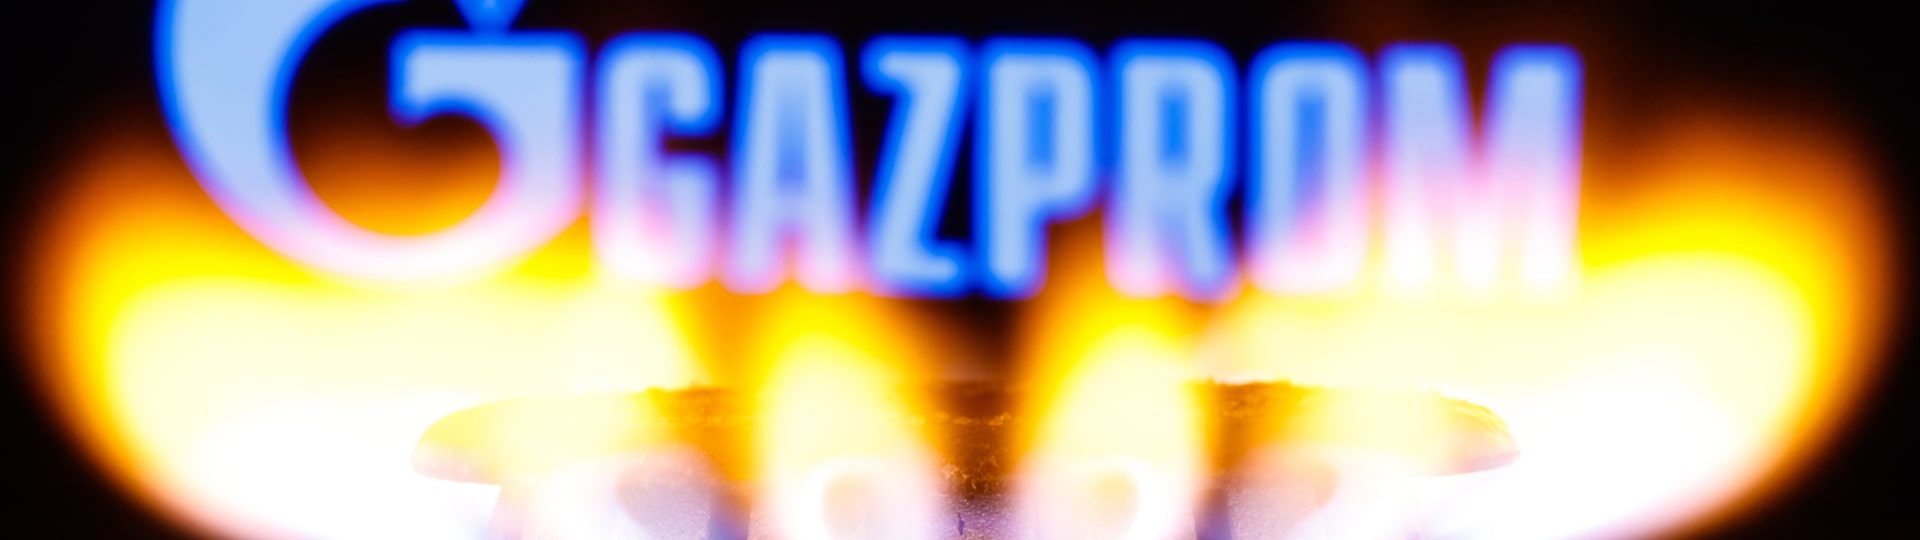 Gazprom vyvezl do EU a Turecka méně plynu, než se zavázal